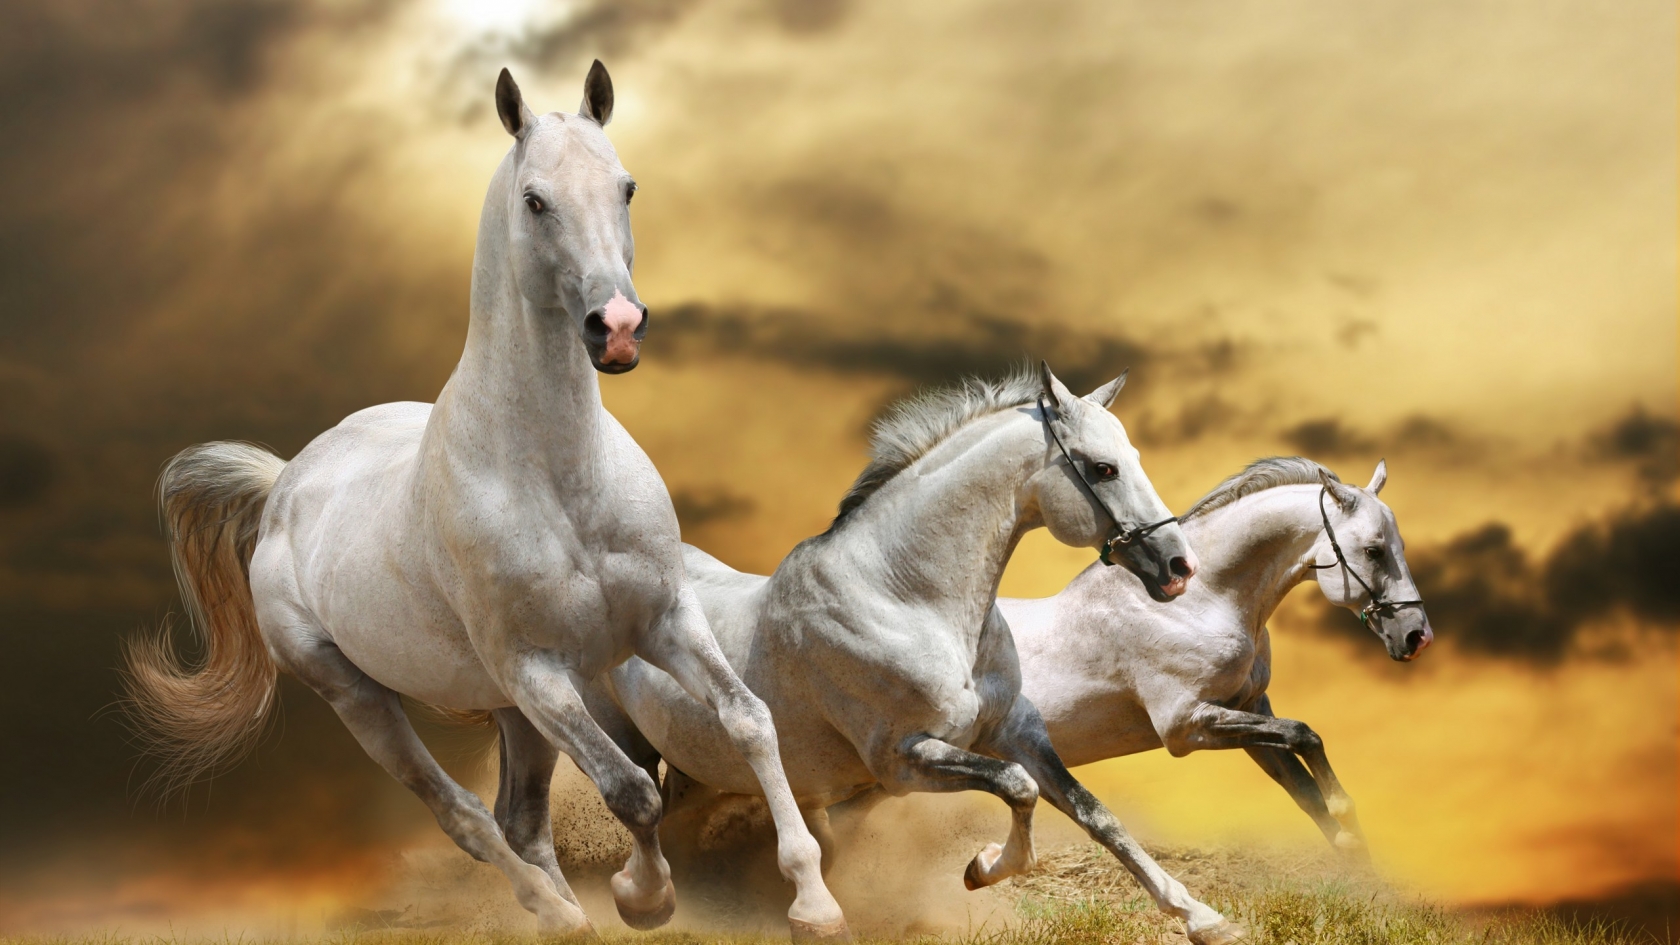 Wilde White Horses for 1680 x 945 HDTV resolution